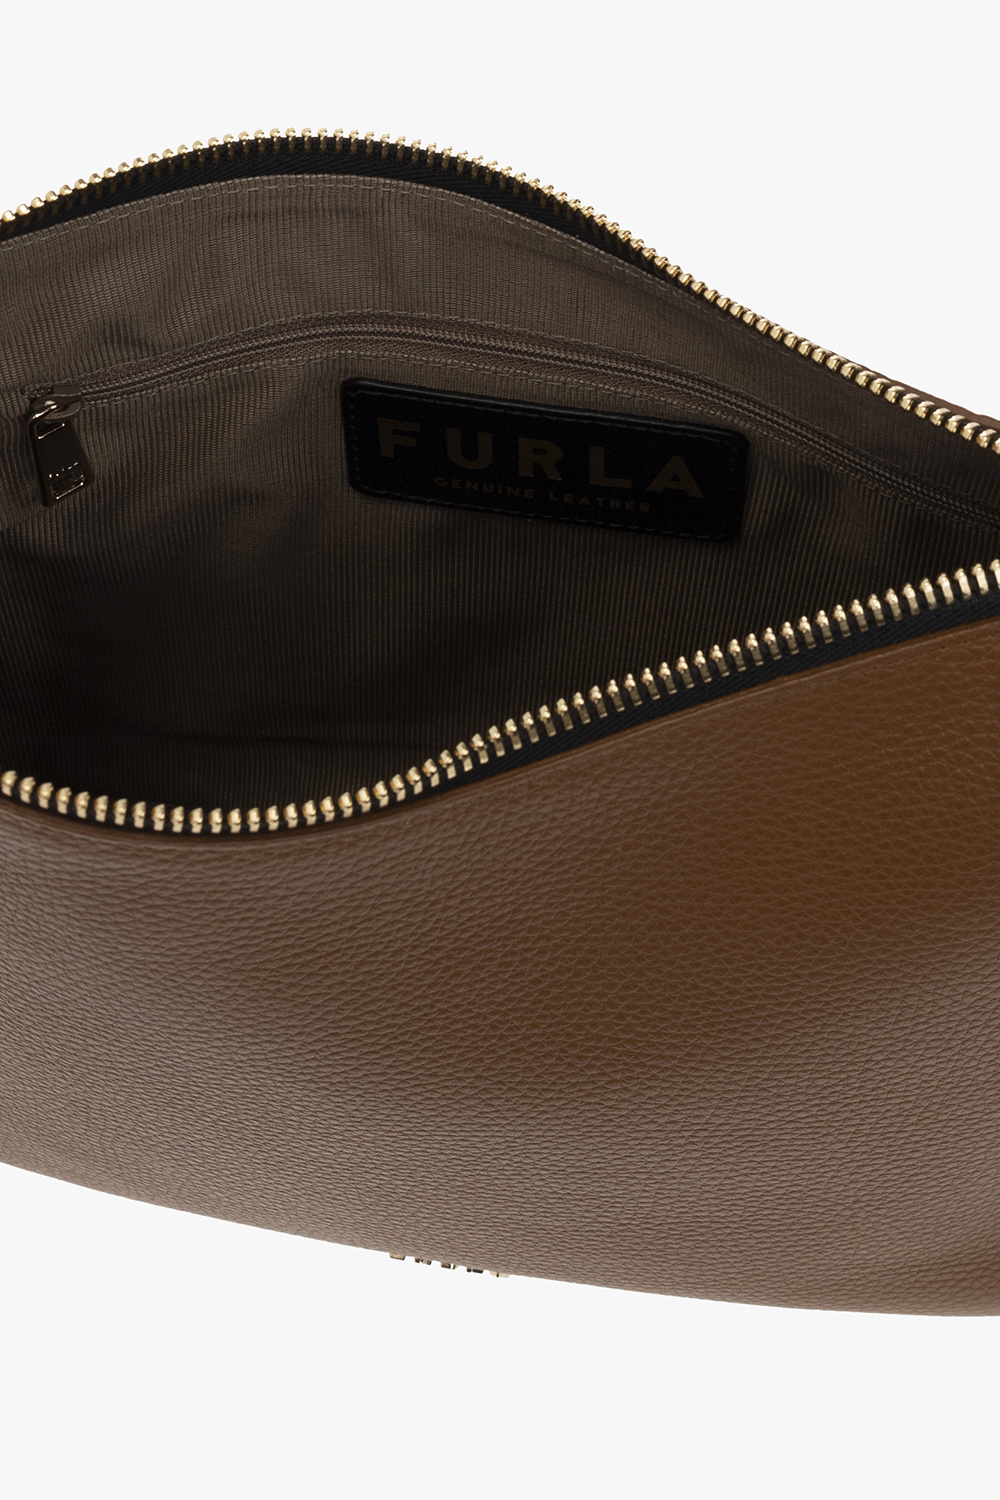 Furla ‘Sky Medium’ shoulder bag